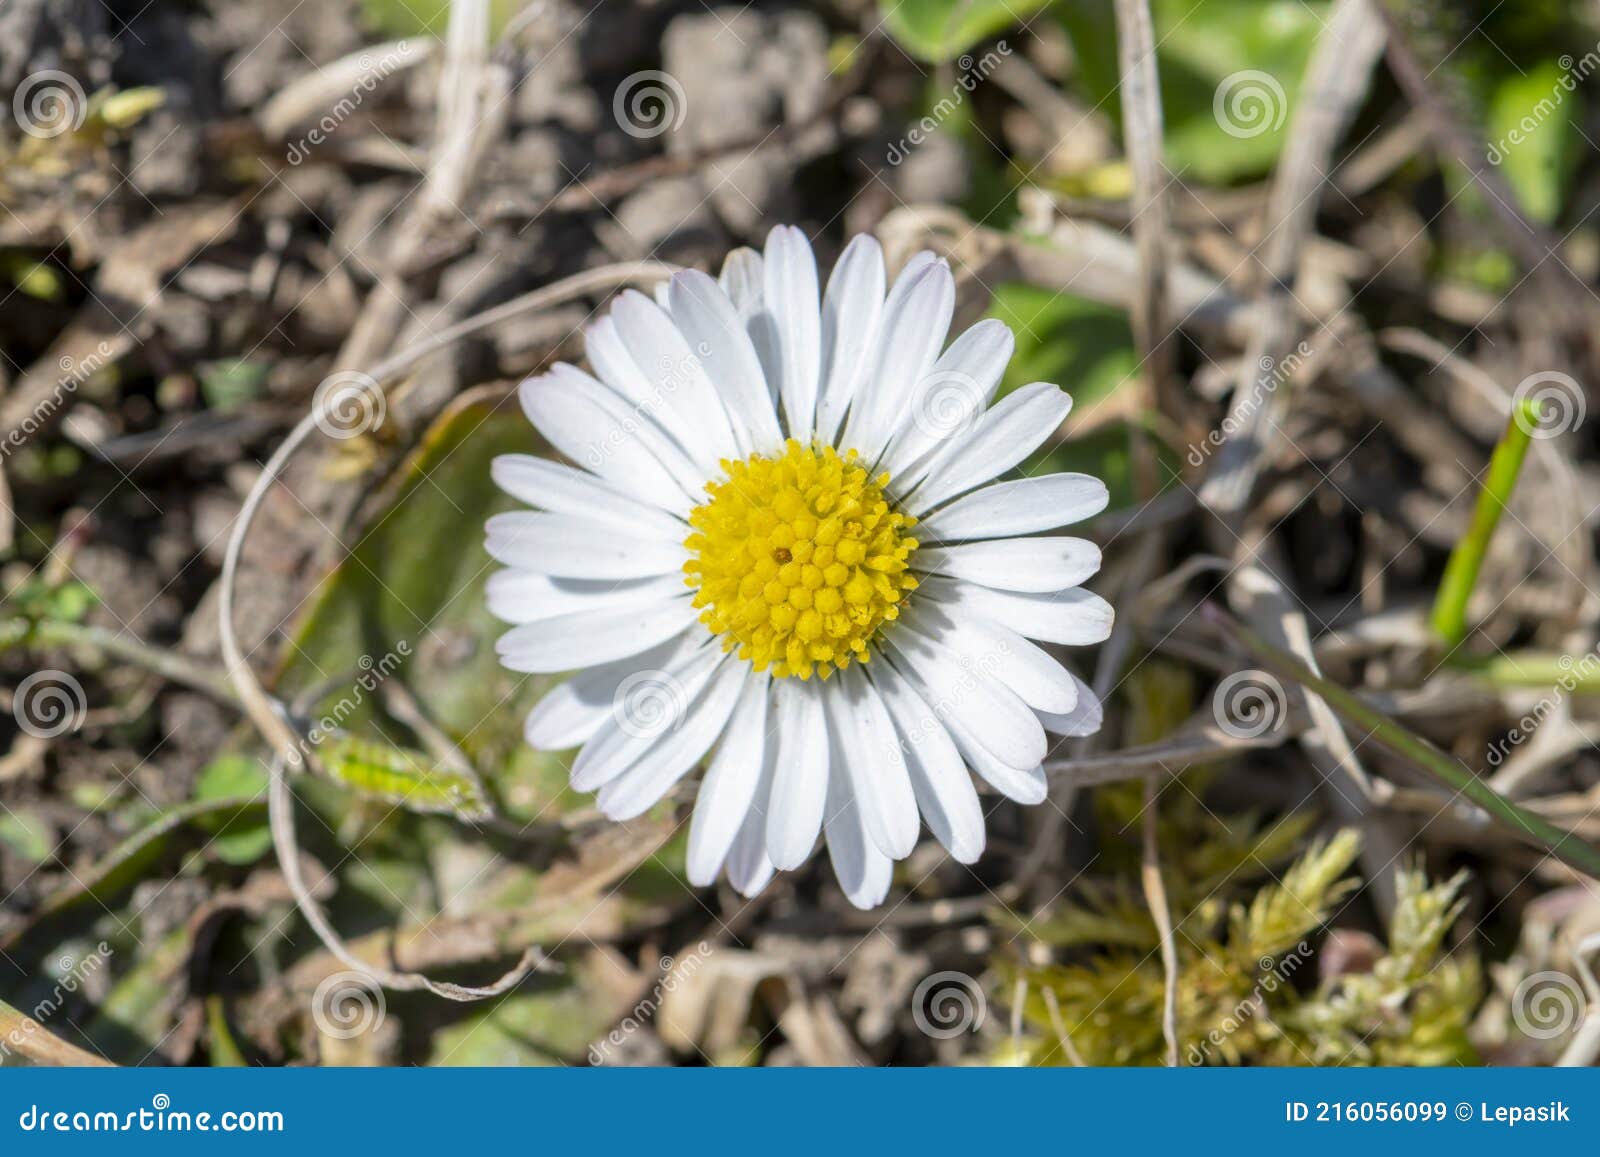 Une Fleur De Marguerite Blanche Pousse Hors Du Sol Les Premières Fleurs De  Prairie De Printemps. Image stock - Image du soleil, camomille: 216056099